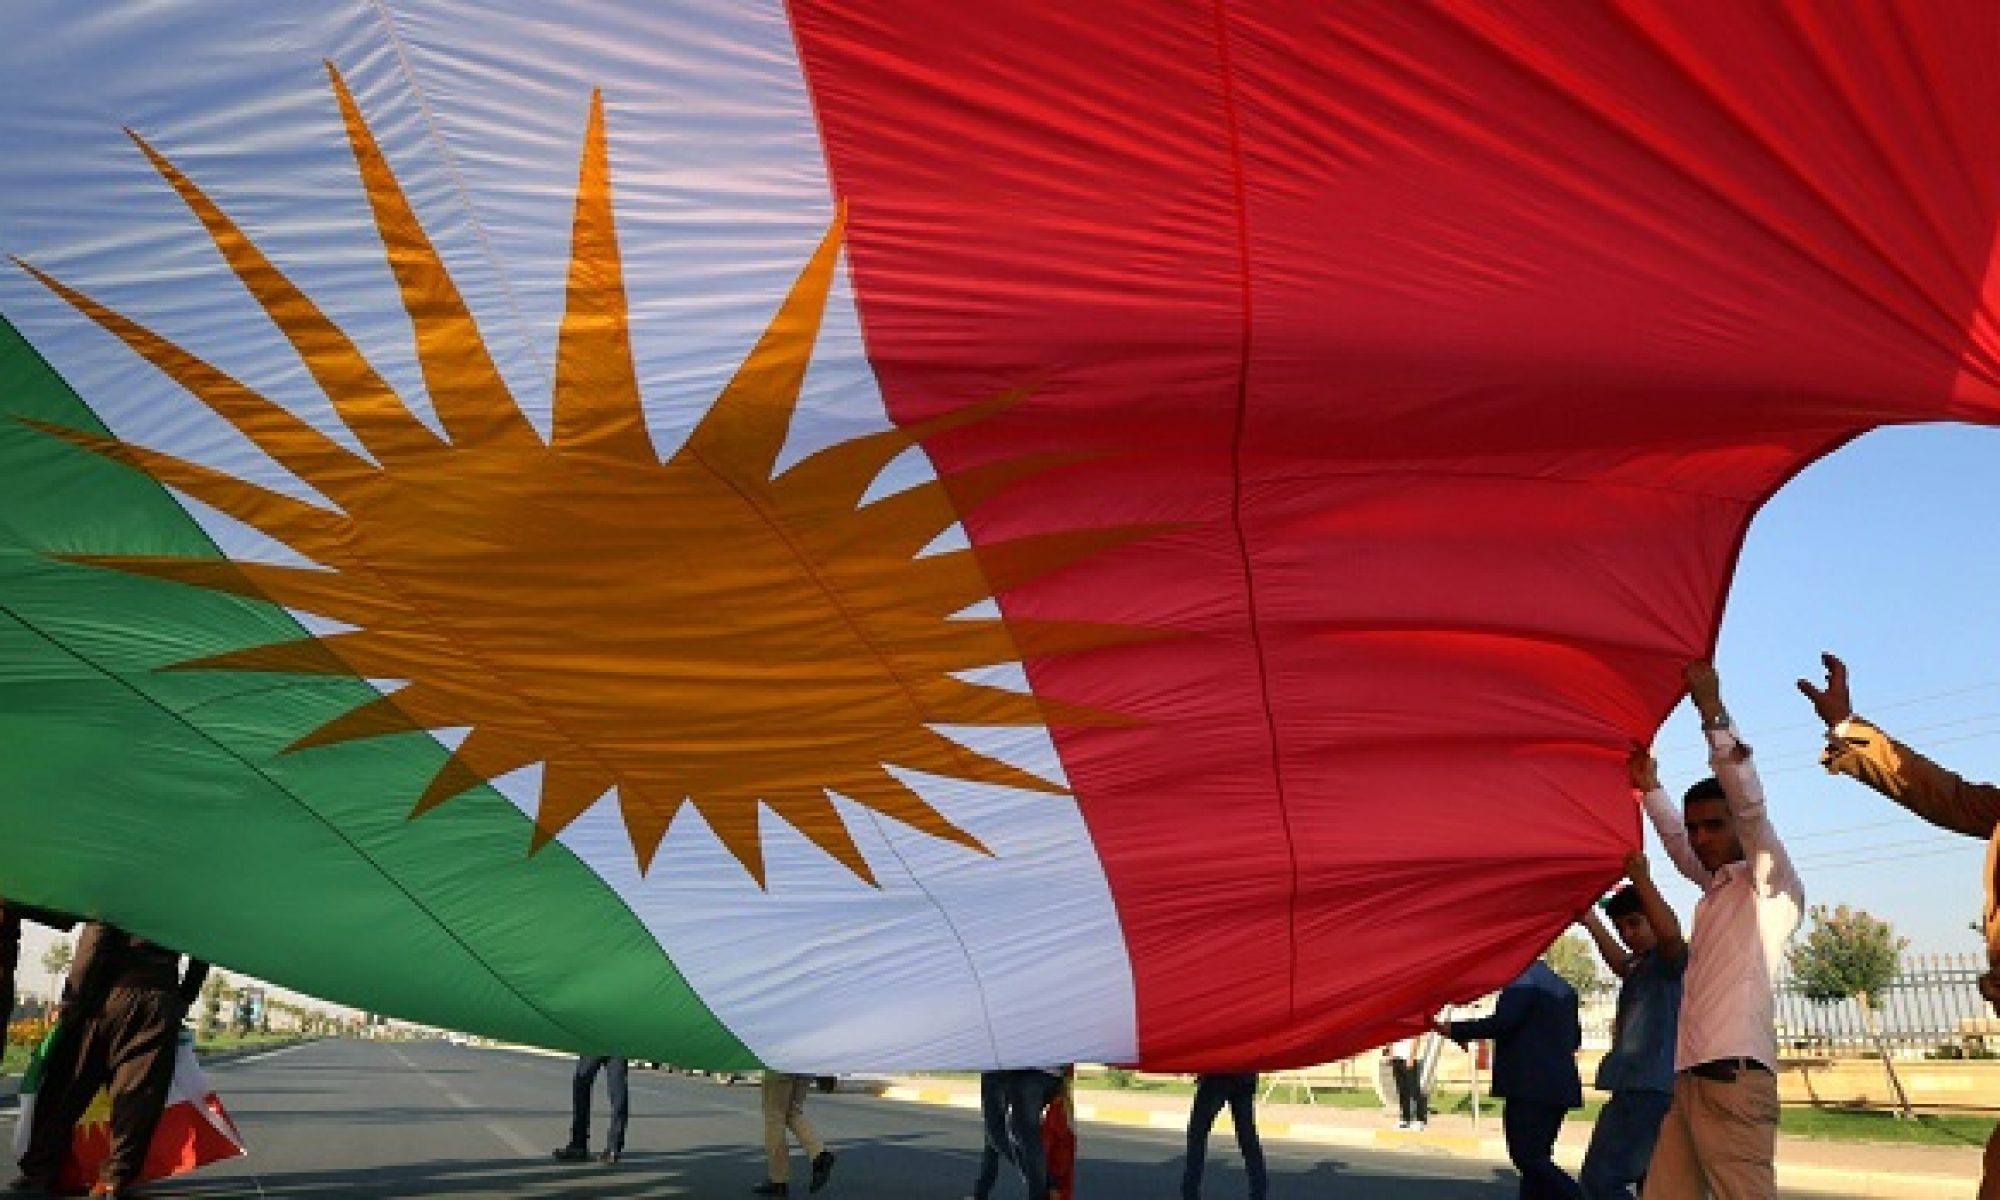 Mahabat, Qazi Muhammed, Barzani, Peşmerge Küridstan, Alarengin Kürdistan Bayrağı Kürt ulusal birliği ve kurtuluşunun sembolüdür